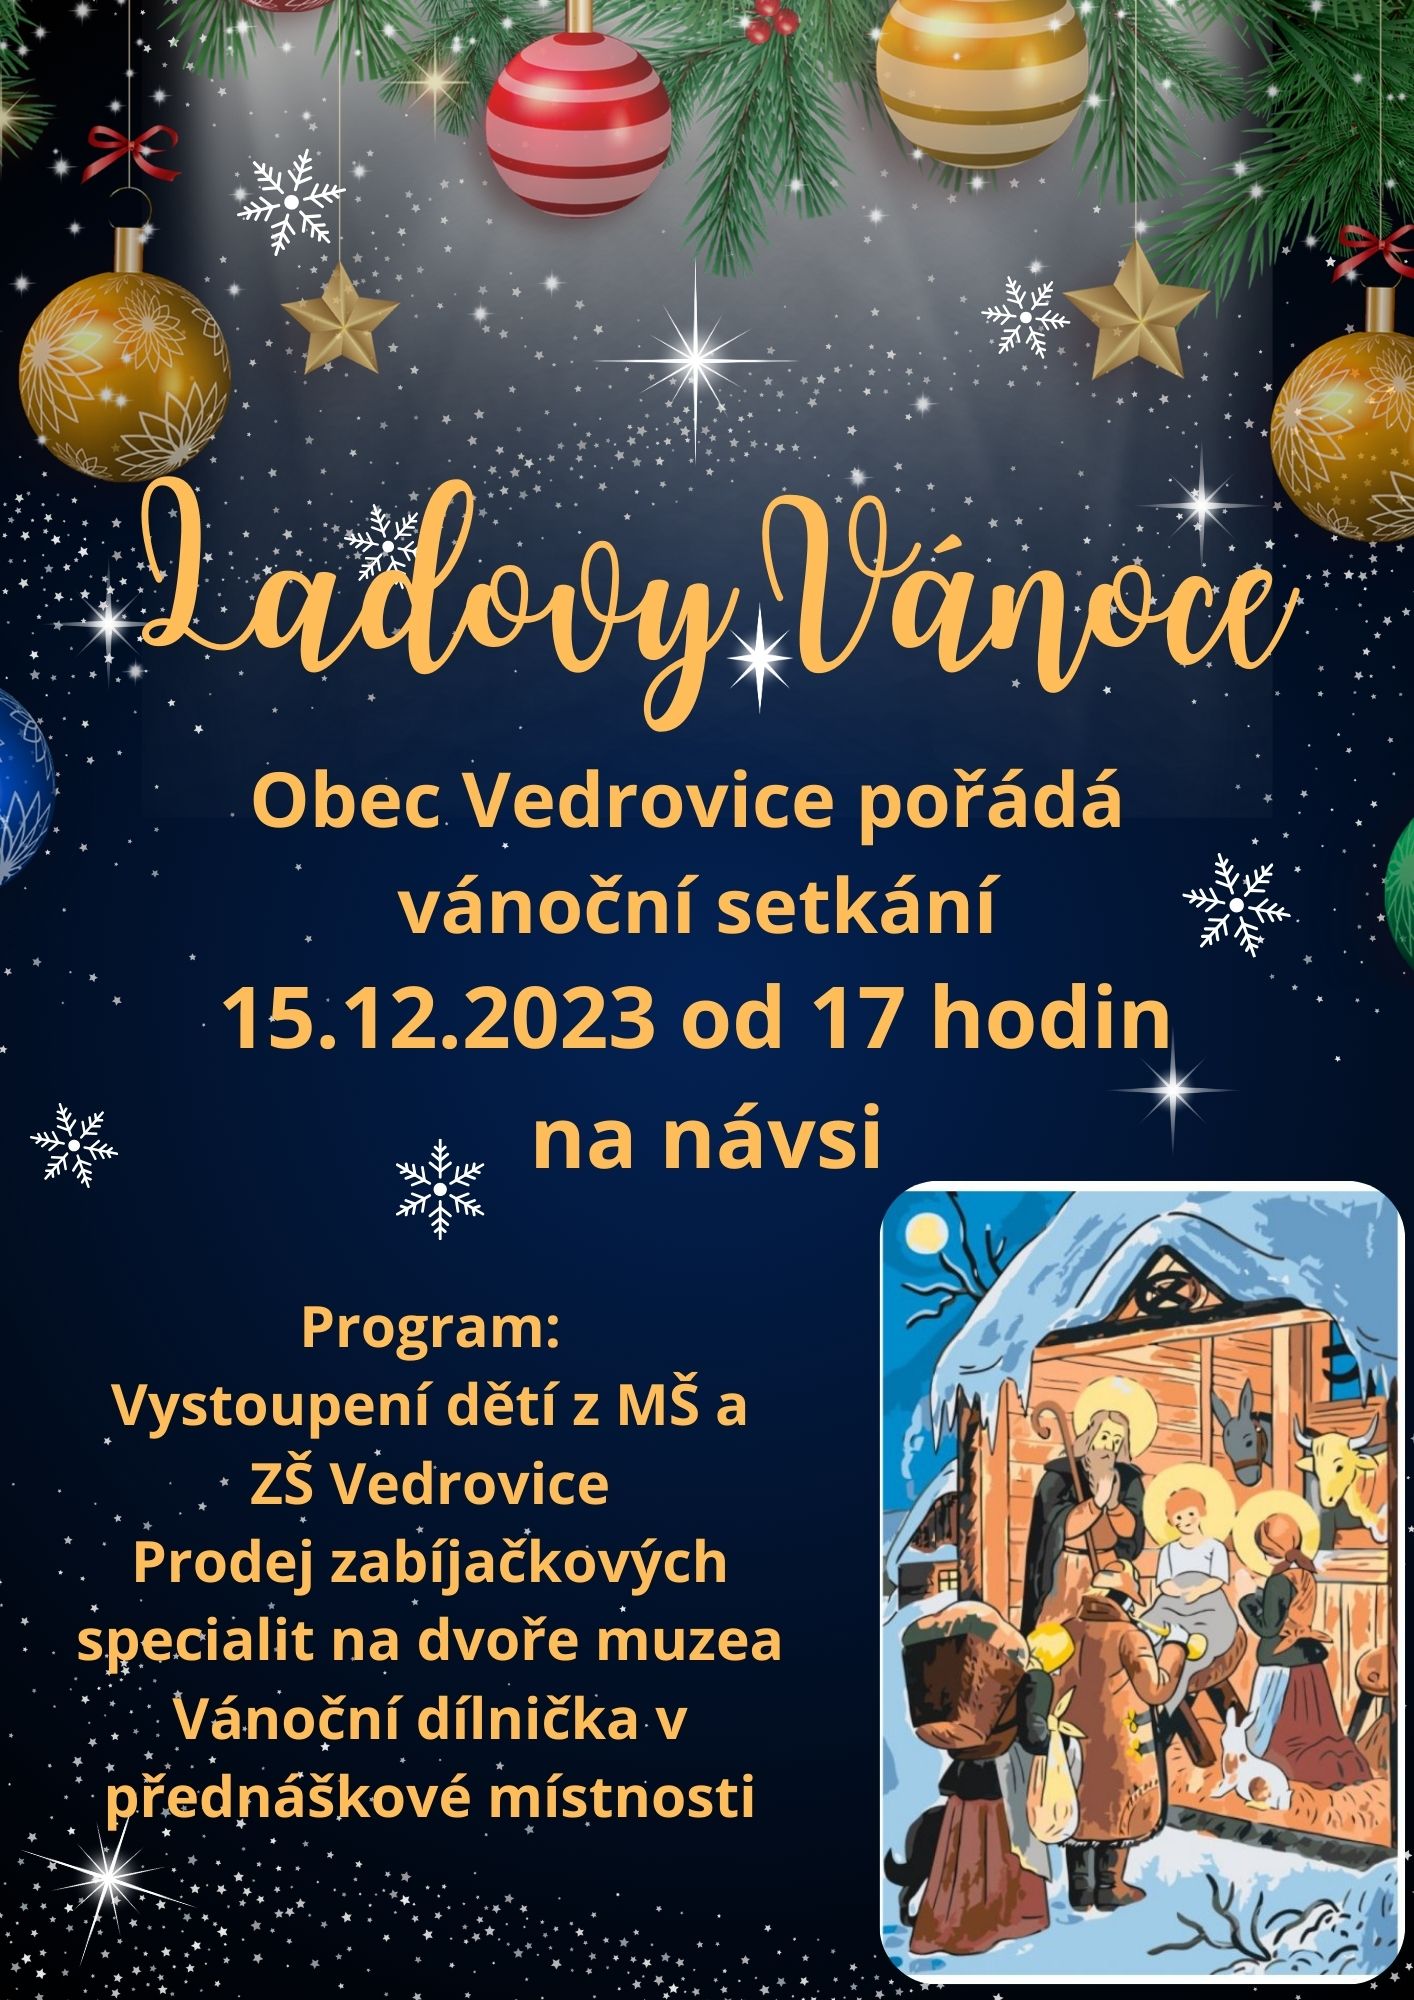 Ladovy-Vanoce